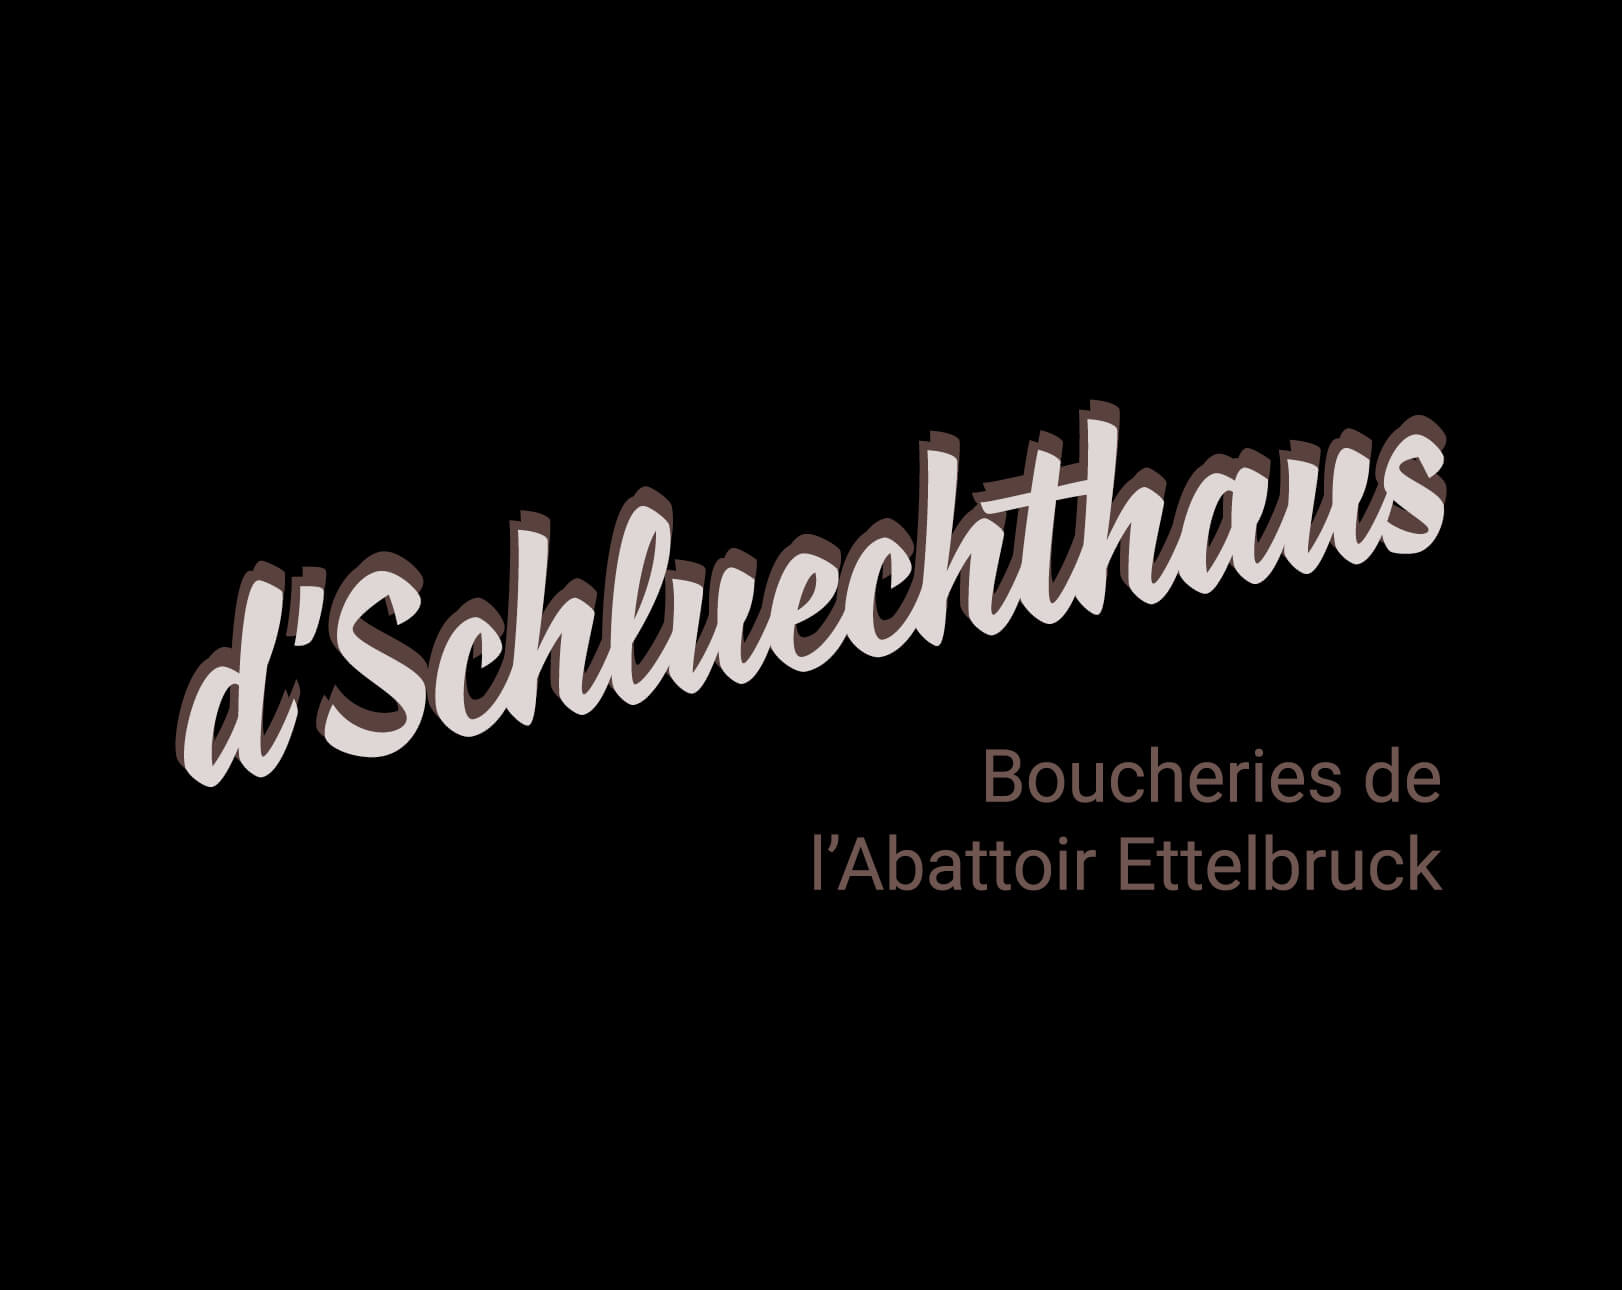 Logo de la boucherie d’Schluechthaus